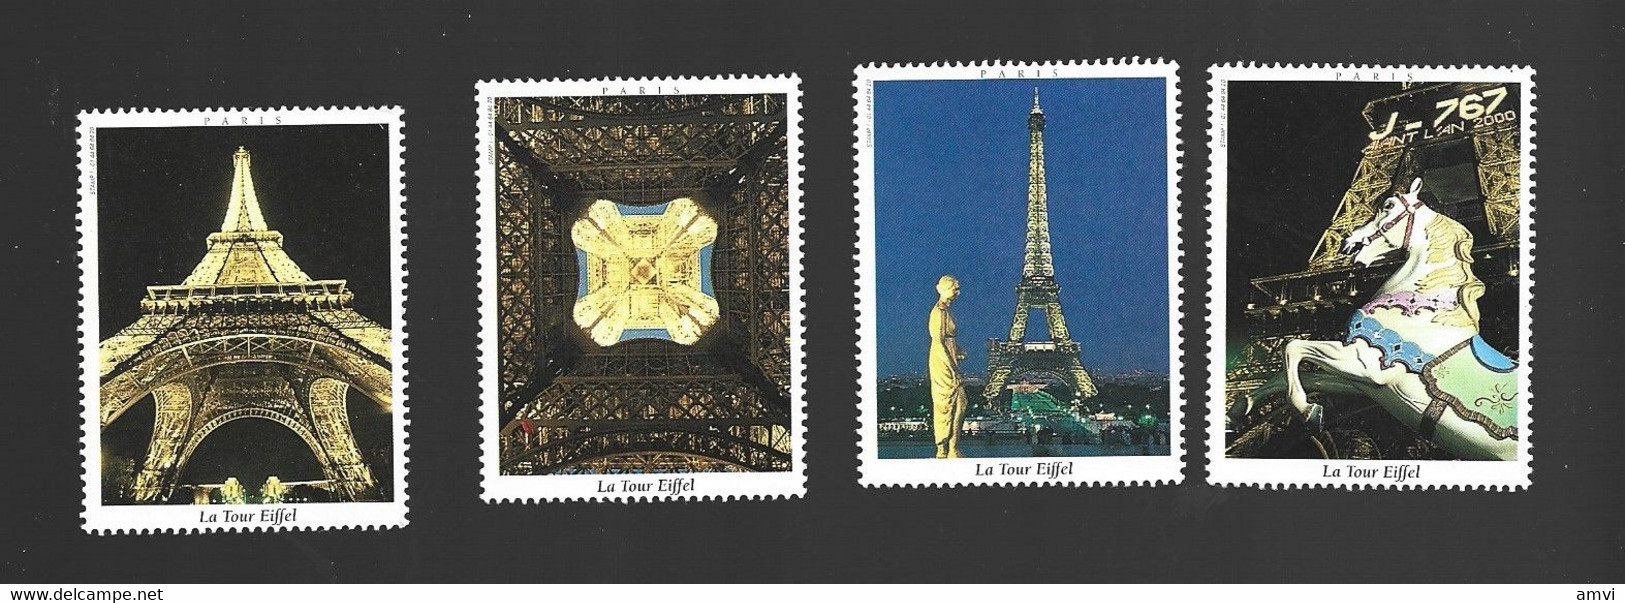 22- 5 - 1240 4 Vignette La Tour Eiffel - Tourismus (Vignetten)